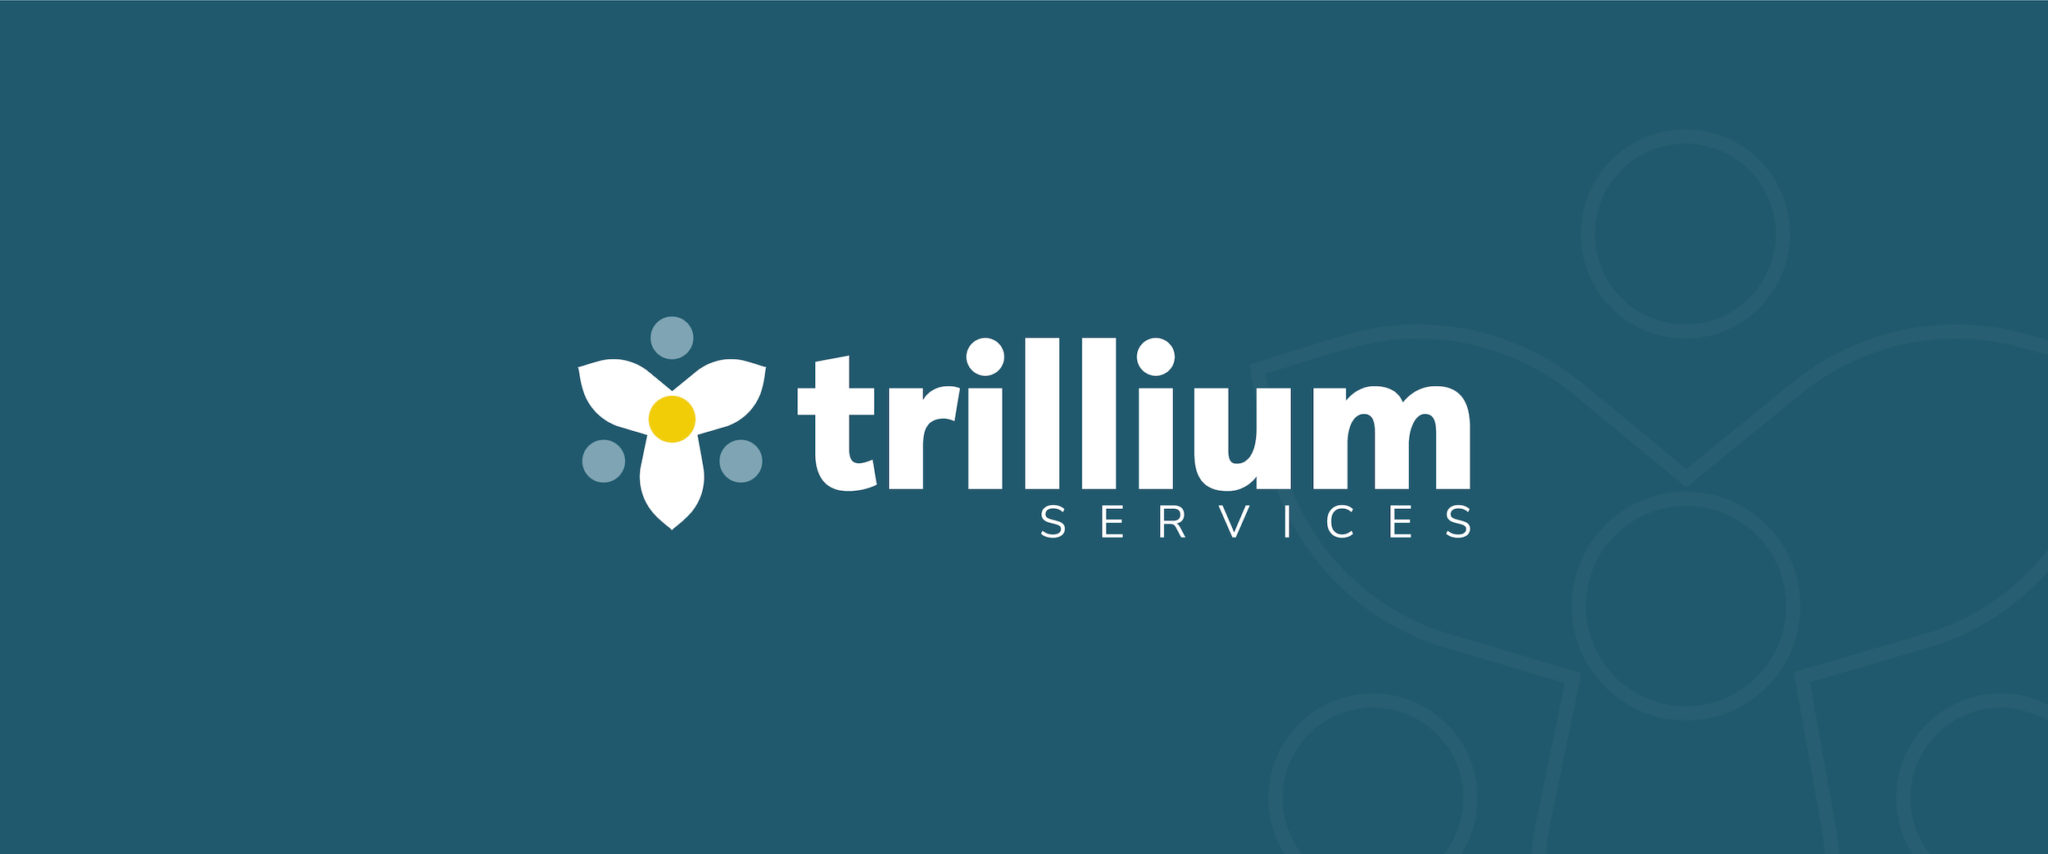 Trillium Services rebranding, designed by Šek Design Studio